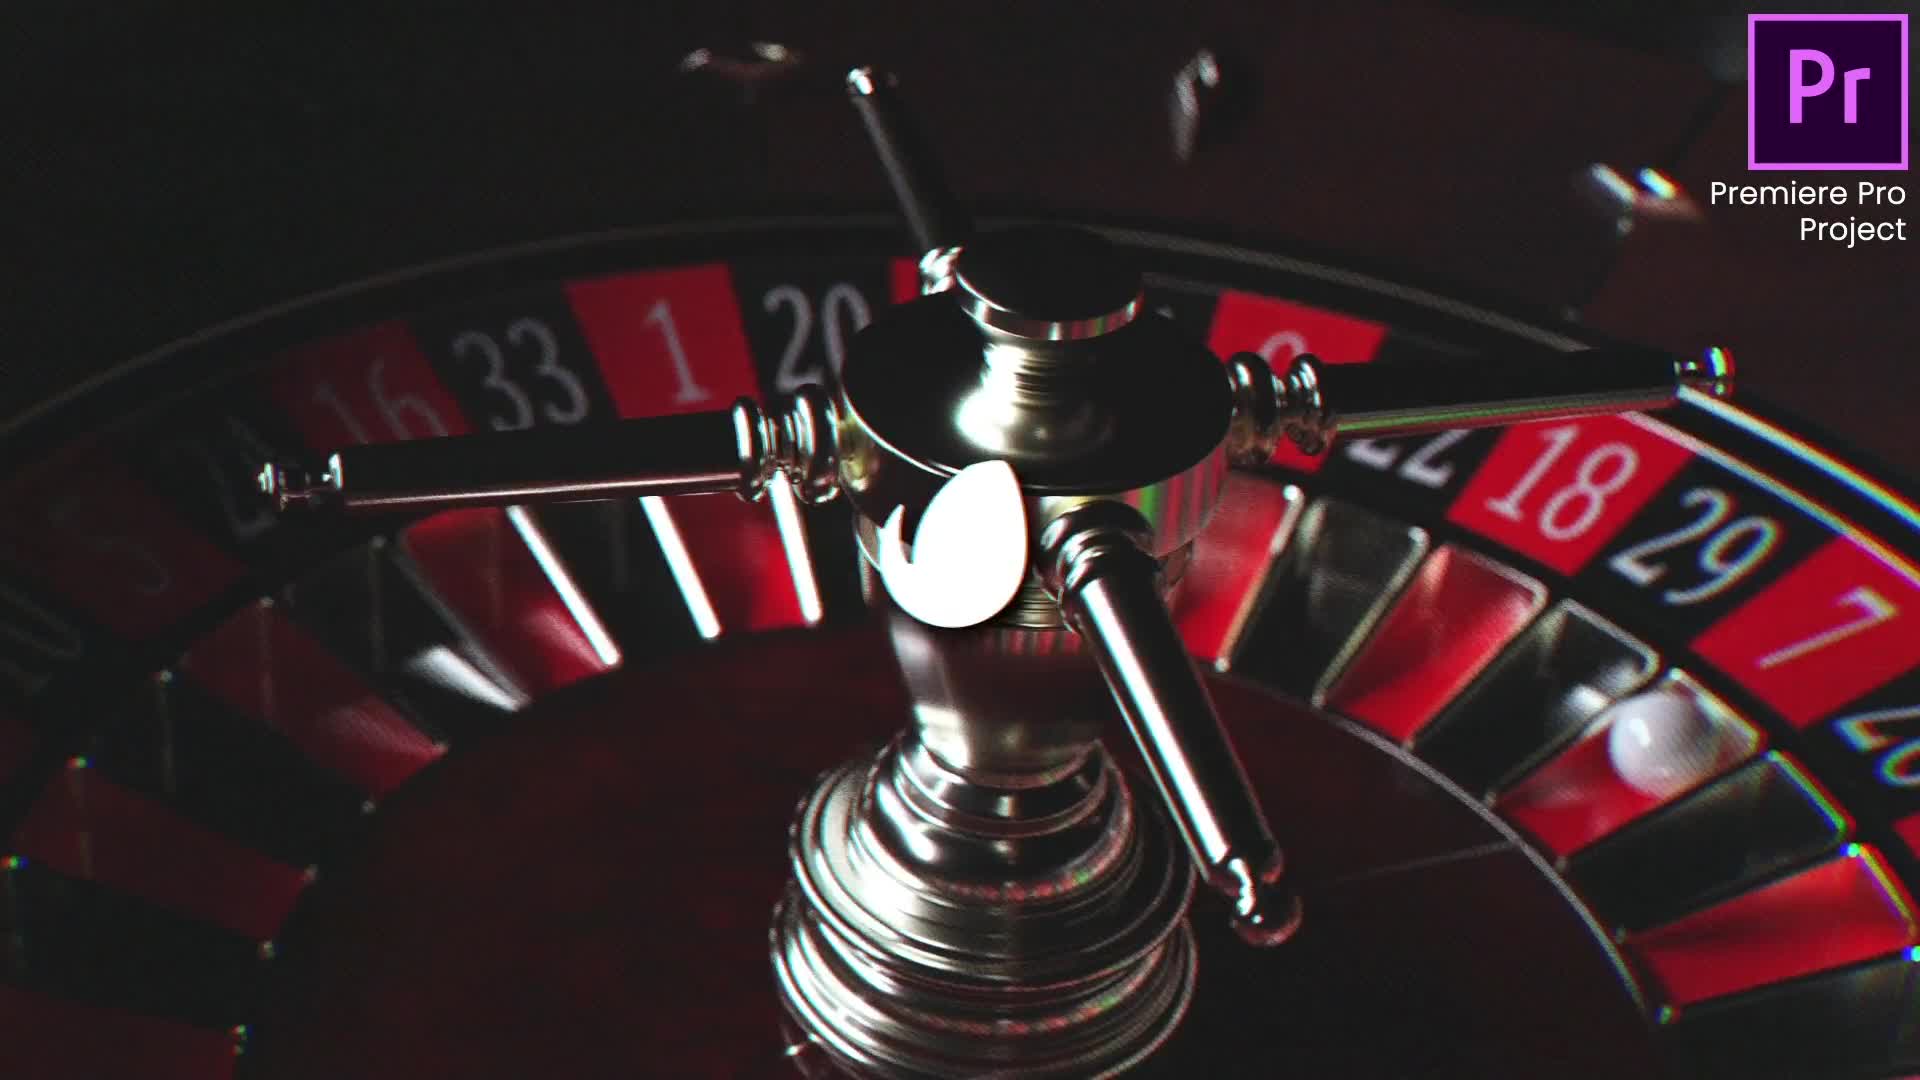 Online Casino Promo |Online Roulette Intro | Slot Machine Game| Poker App| Premiere Pro Videohive 33948684 Premiere Pro Image 1